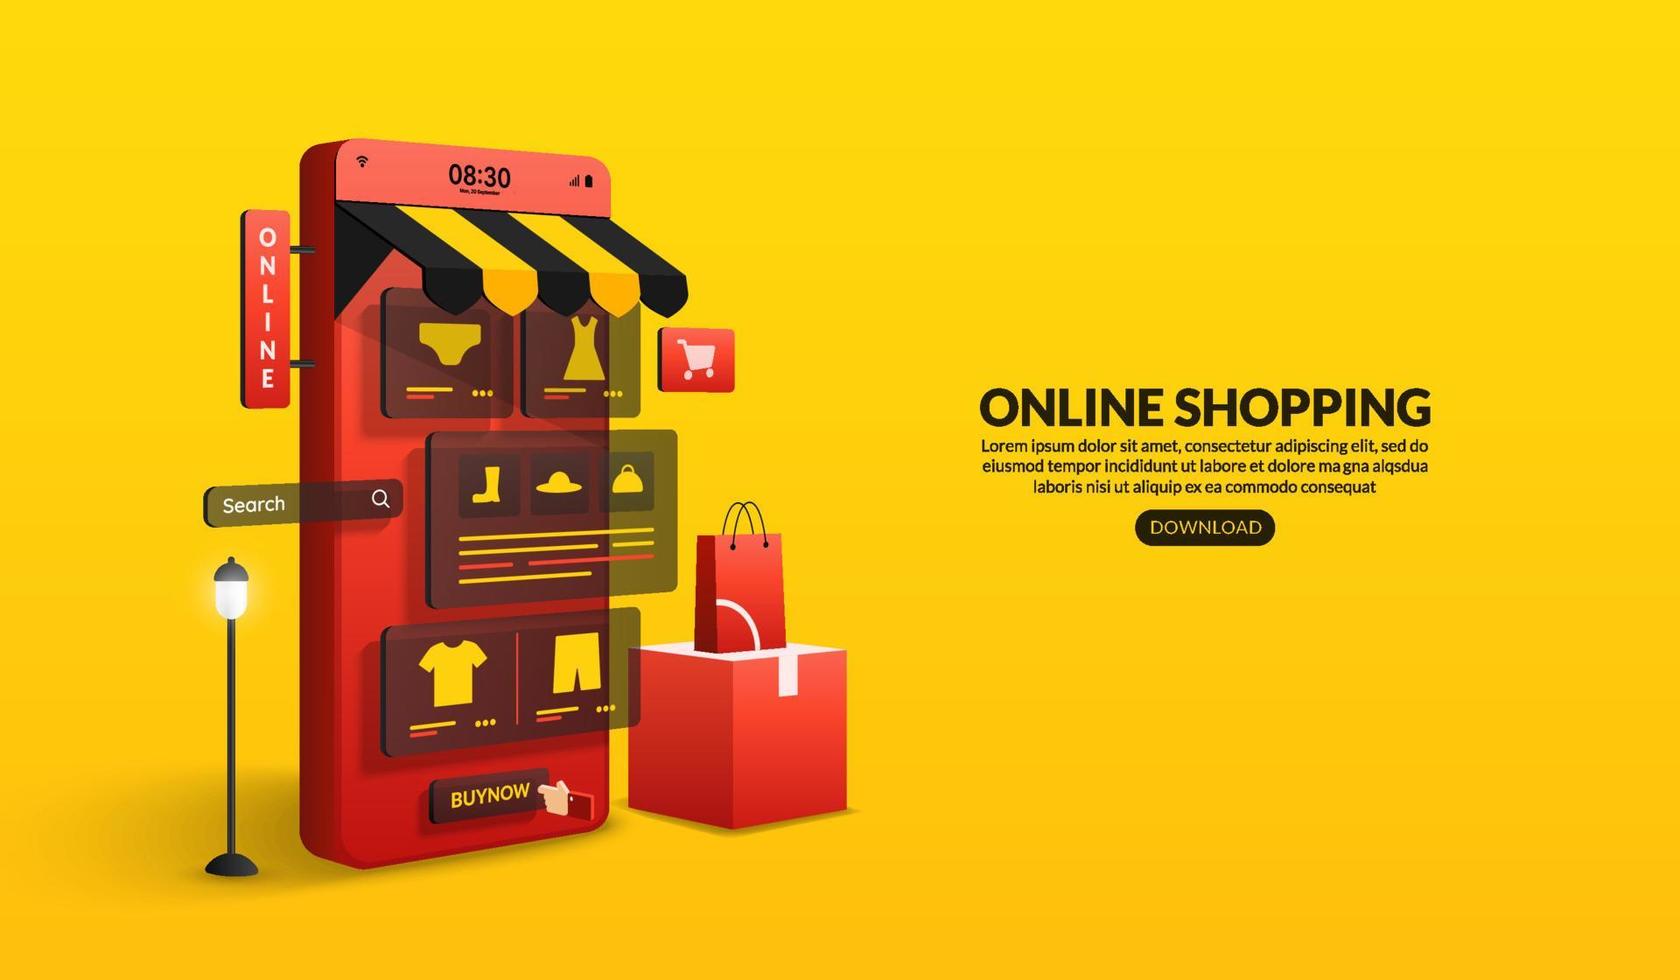 Online-Shopping auf Website und mobiler Anwendung per Smartphone, digitaler Marketingshop und Ladenkonzept vektor